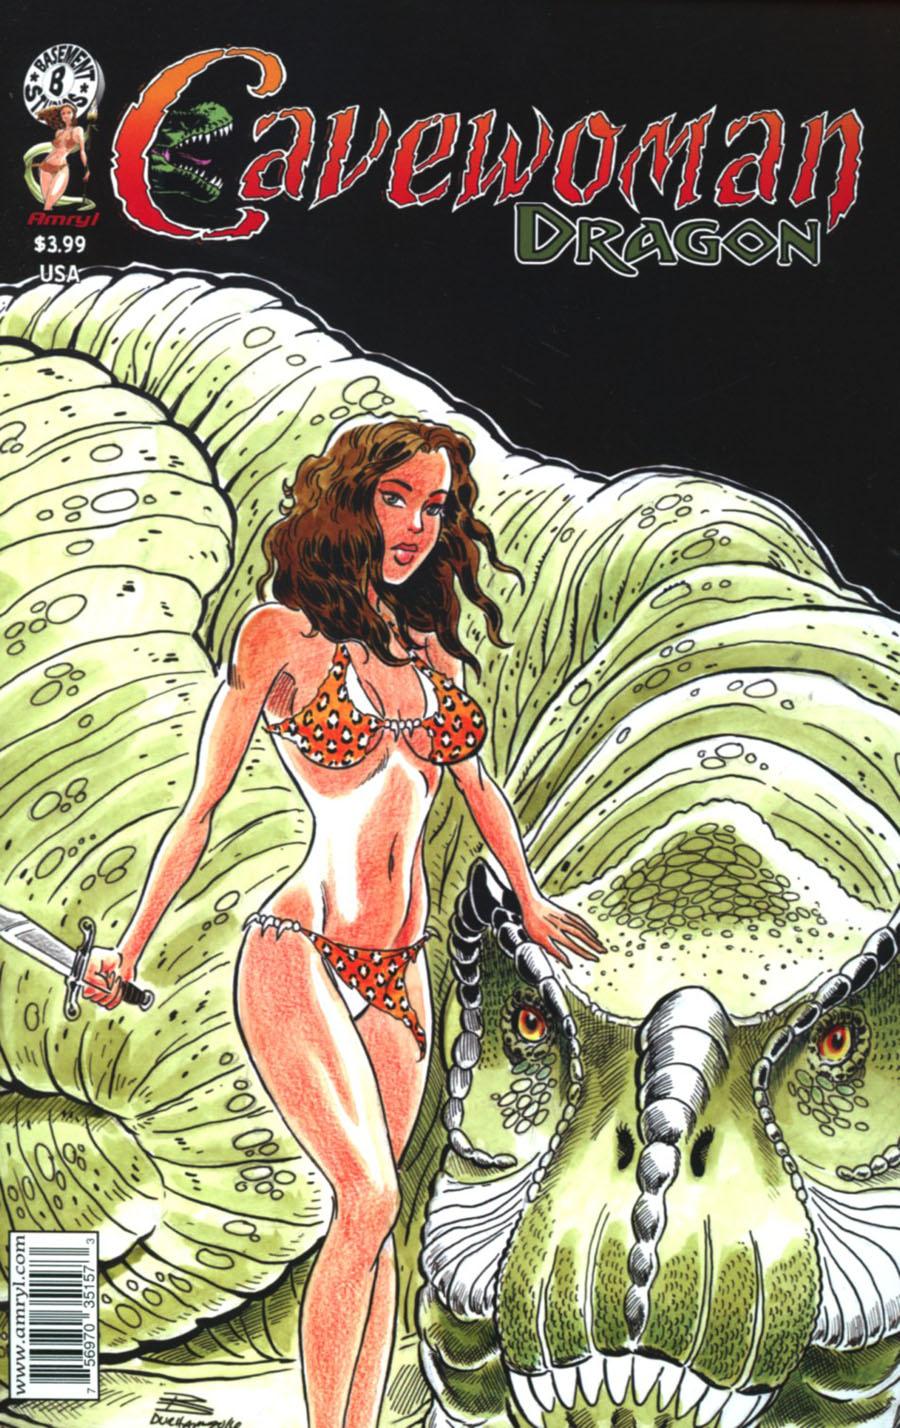 Cavewoman Dragon Vol. 1 #1